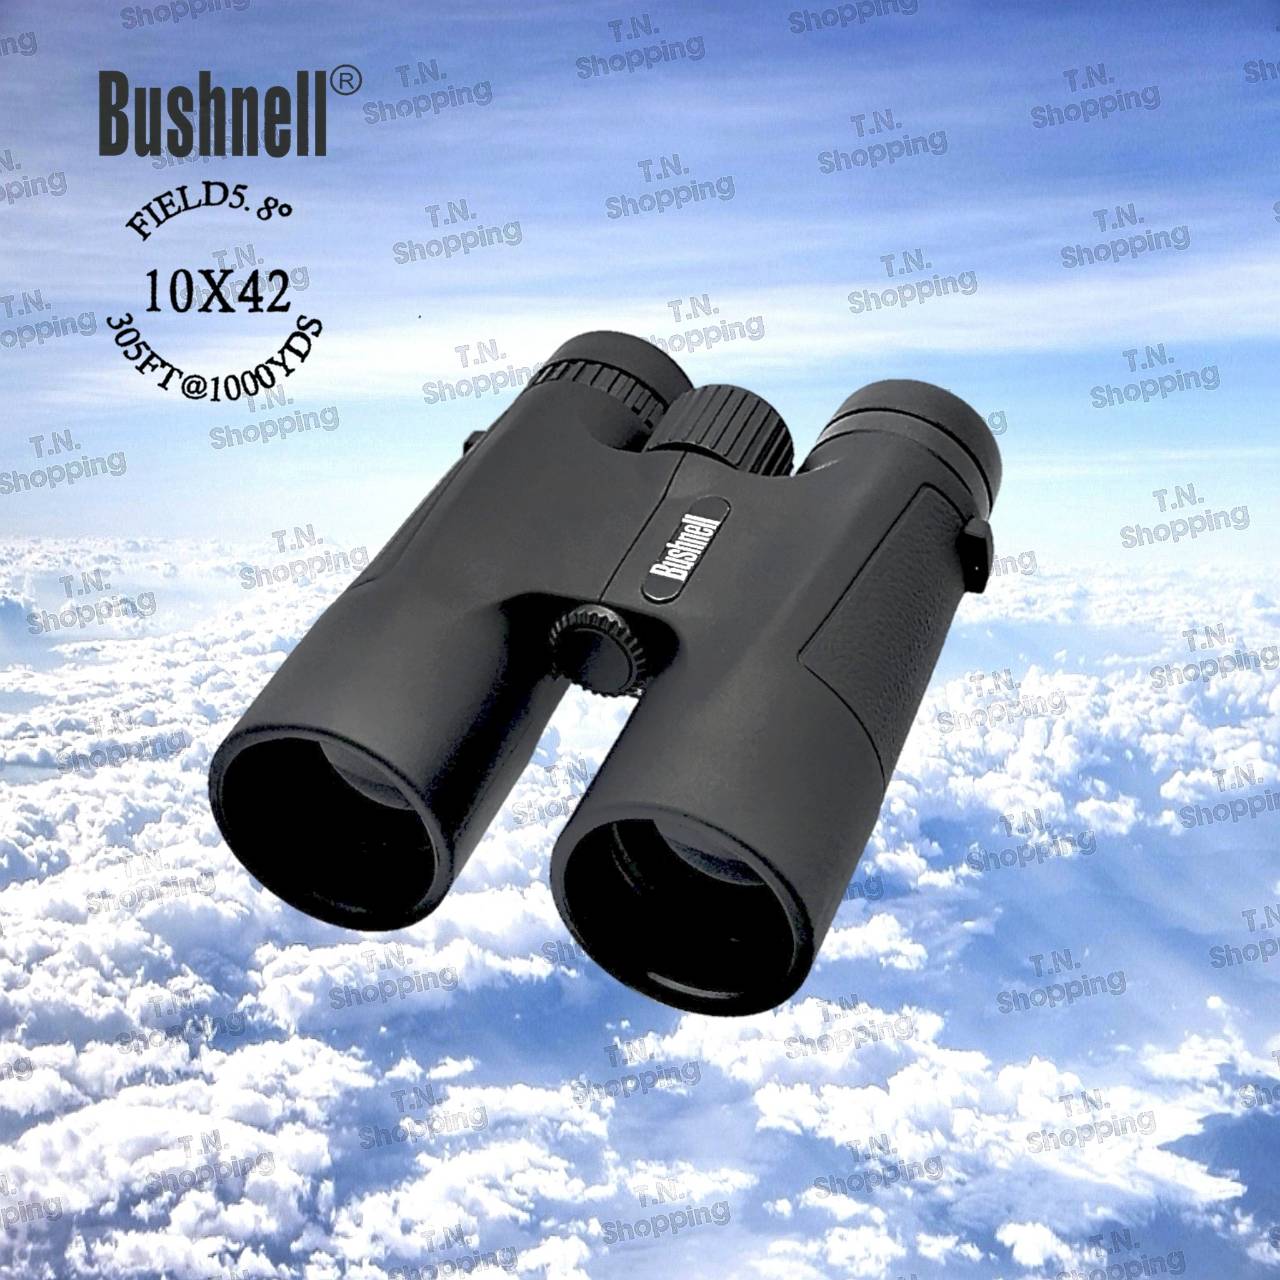 Bushnell กล้องส่องทางไกล 10x42